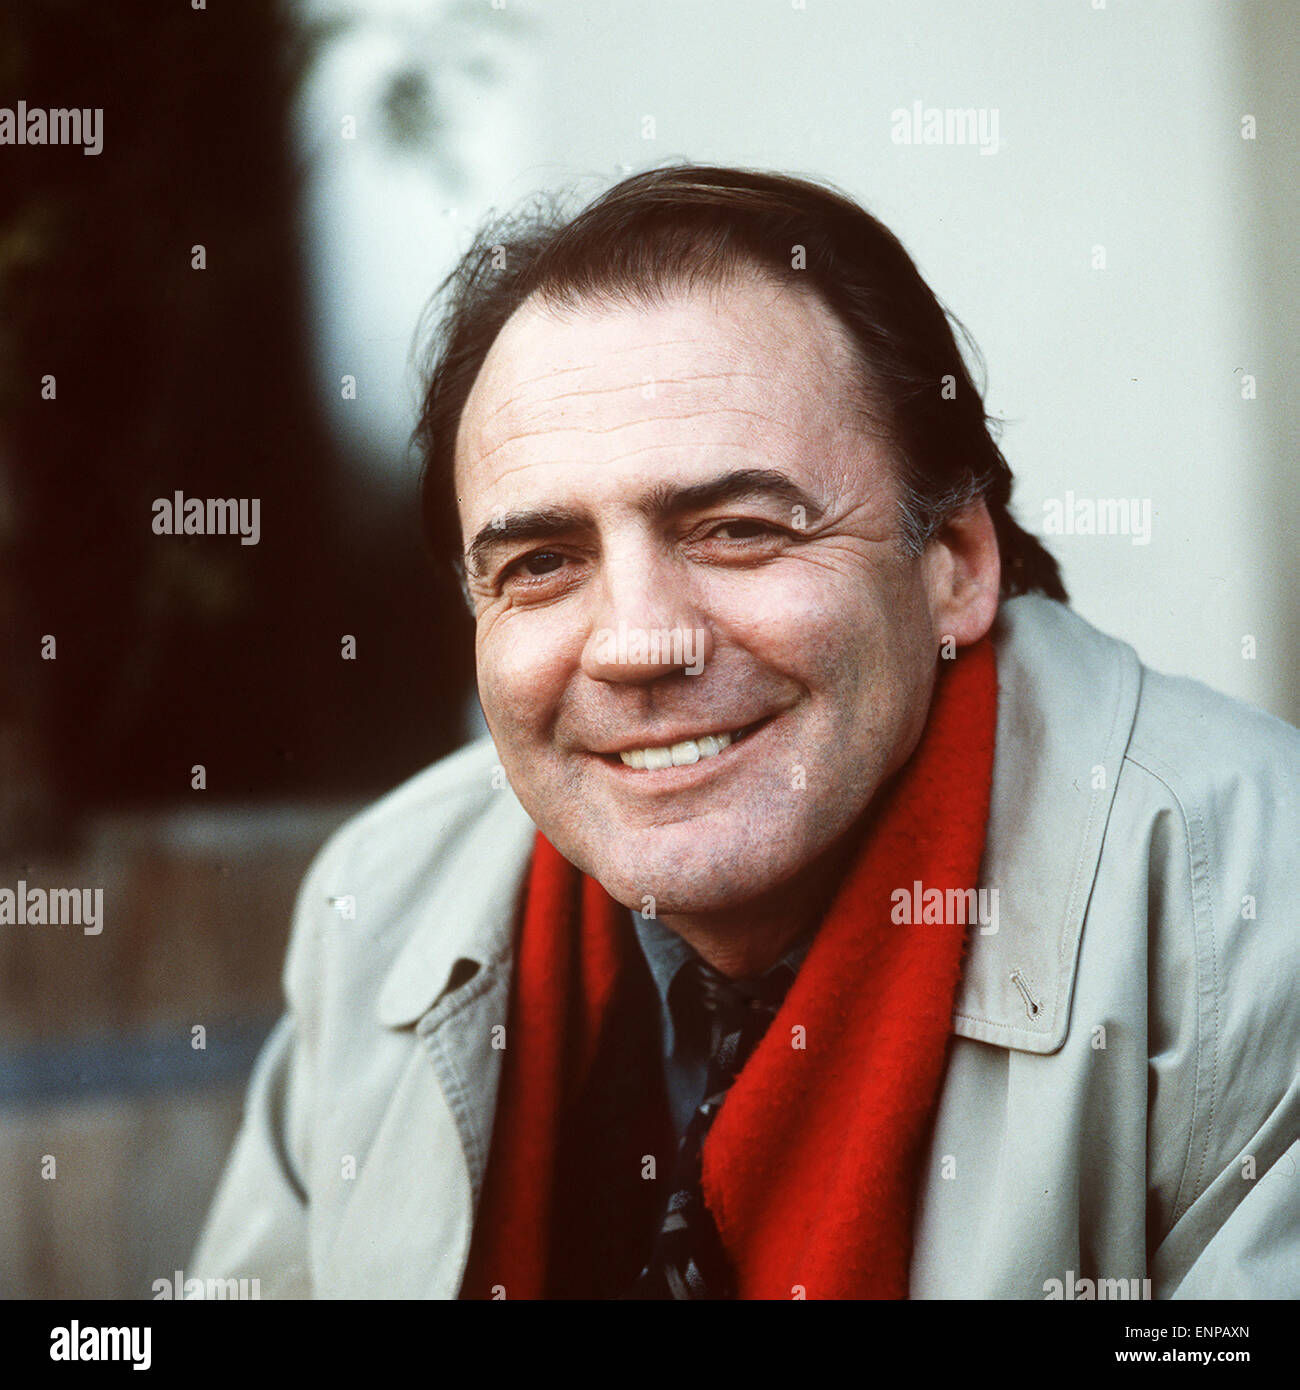 Der renommierte Schweizer Schauspieler Bruno Ganz, Portrait, 02/1990. Famous Swiss actor and Film Star Bruno Ganz, 1990. Stock Photo